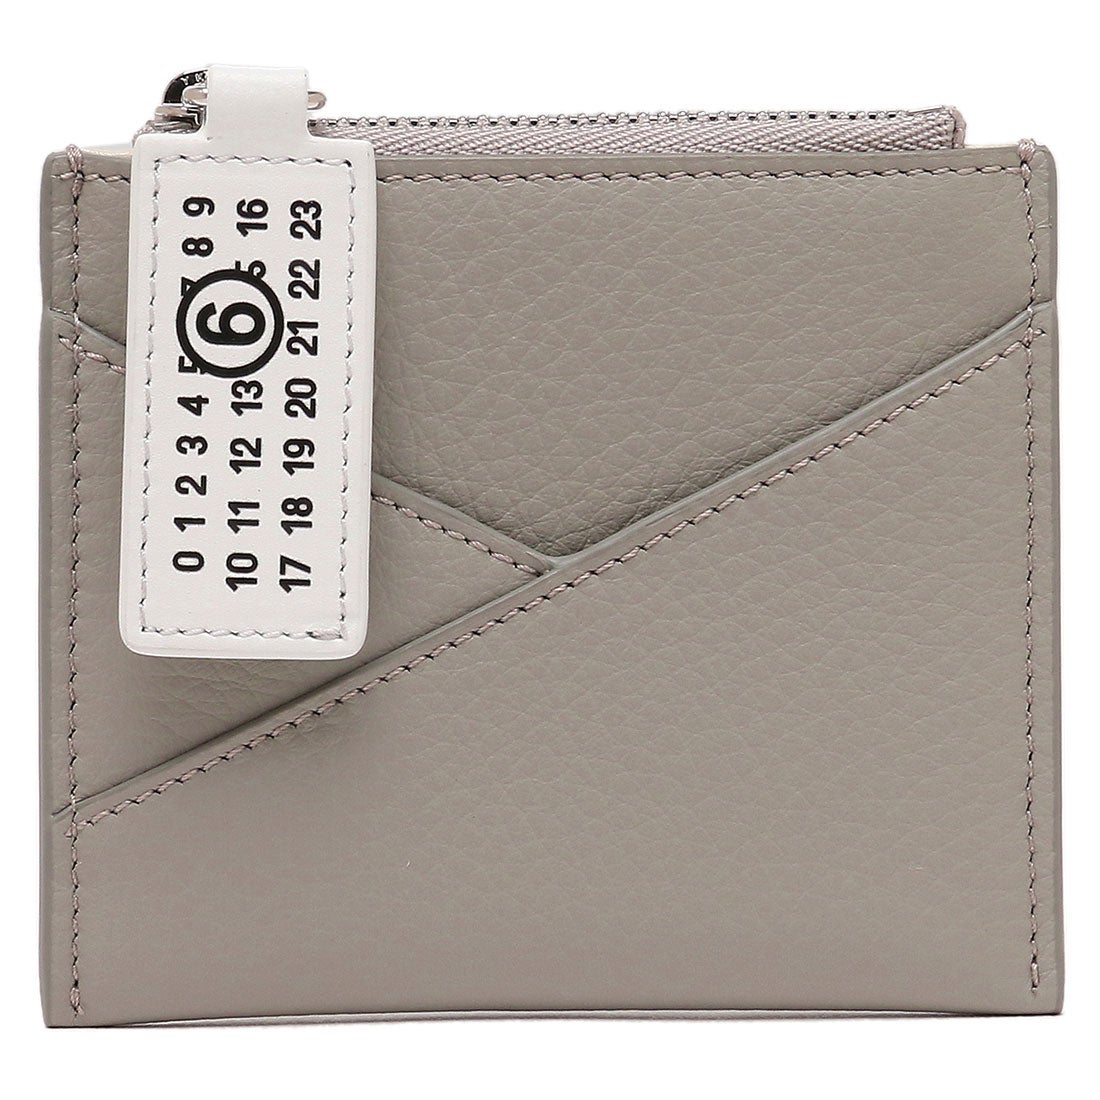 新品 メゾン マルジェラ カレンダーロゴ カードケース パスケース 財布 メンズ